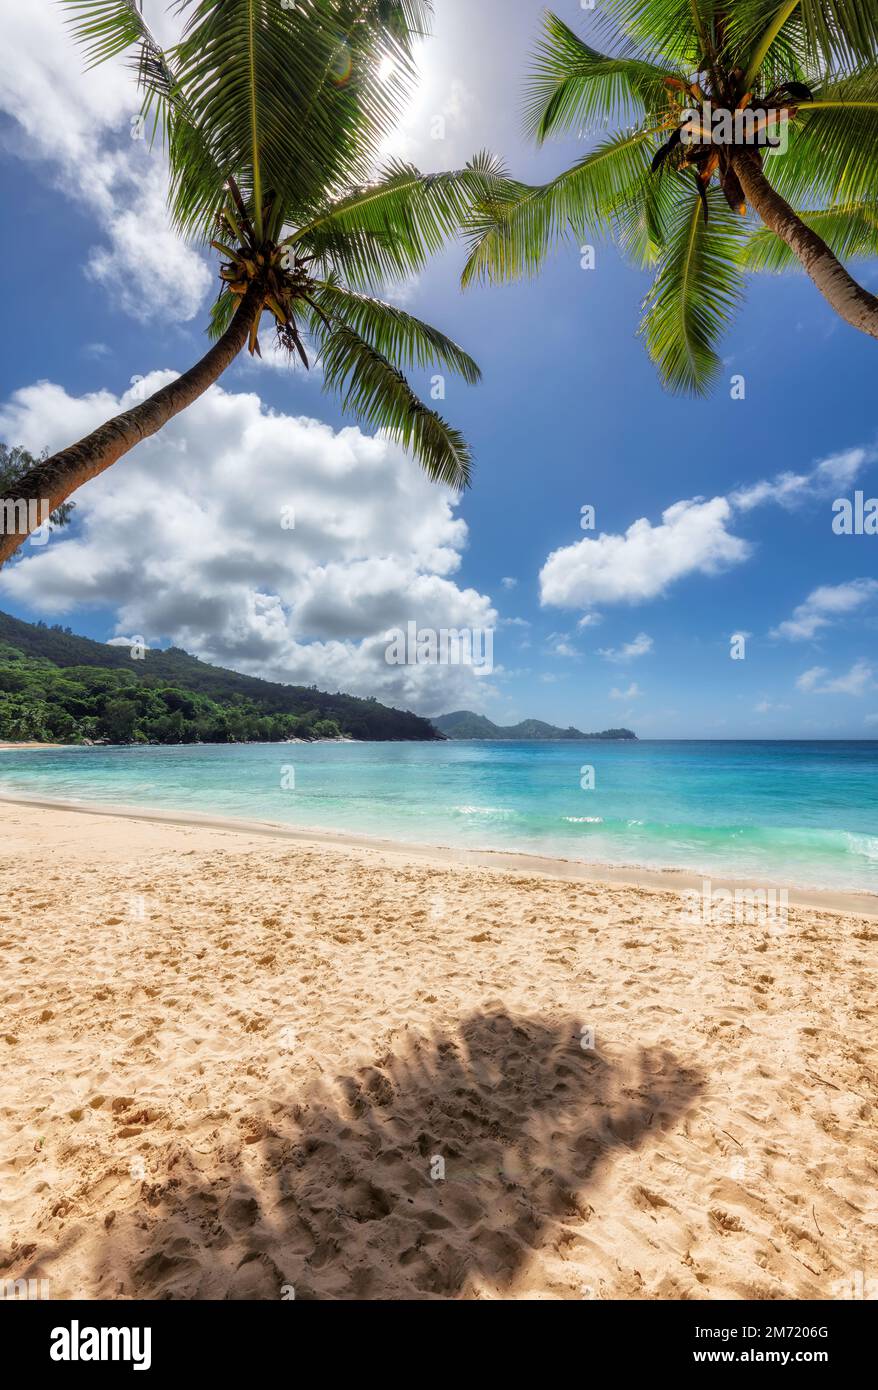 Spiaggia tropicale soleggiata con palme da cocco e il mare turchese sull'isola dei Caraibi. Foto Stock